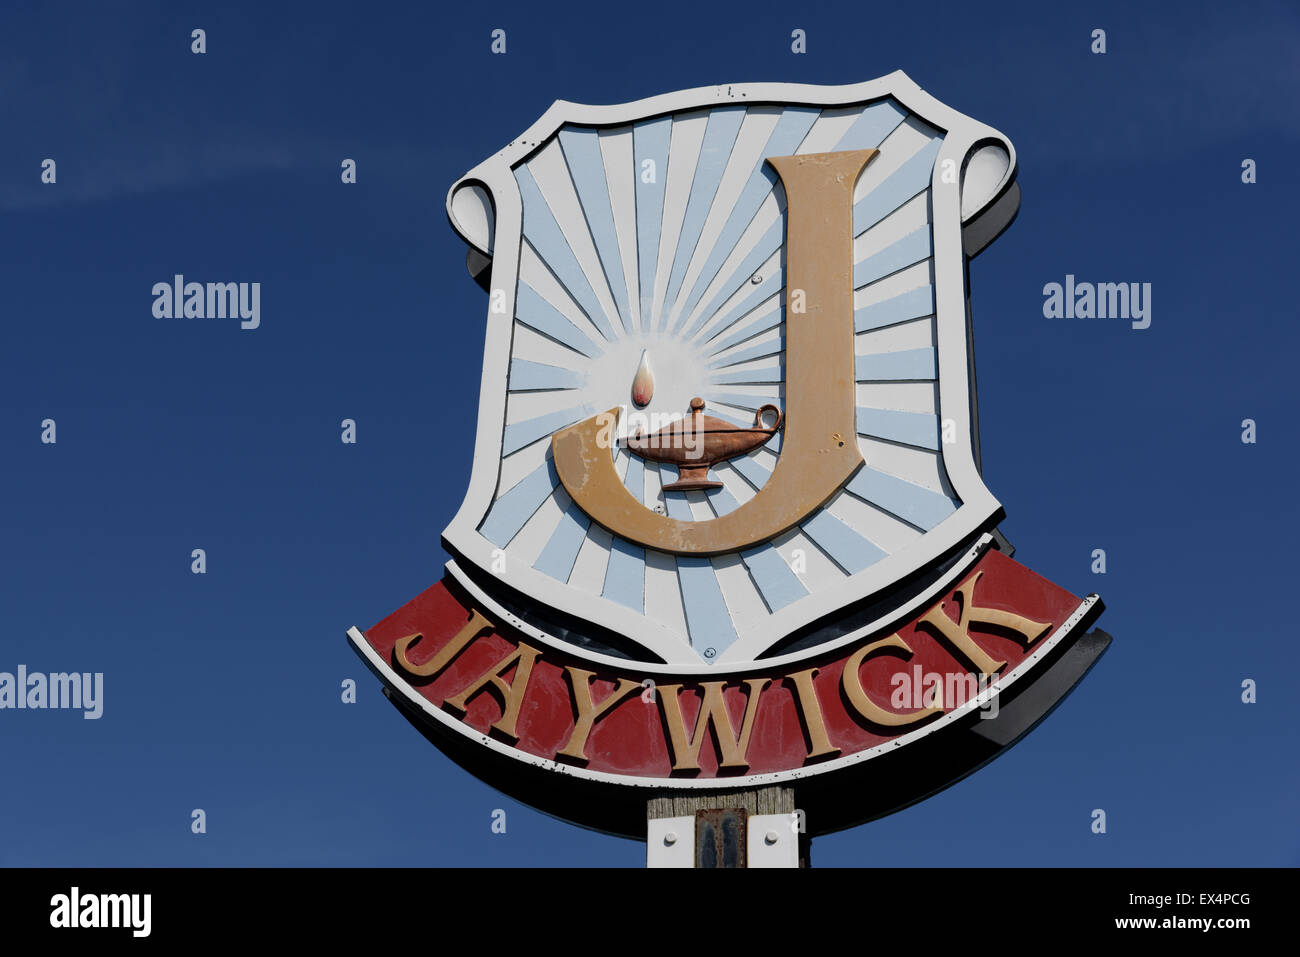 Le panneau de la commune pour Jaywick dans l'Essex, l'une des villes les plus pauvres du Royaume-Uni Banque D'Images